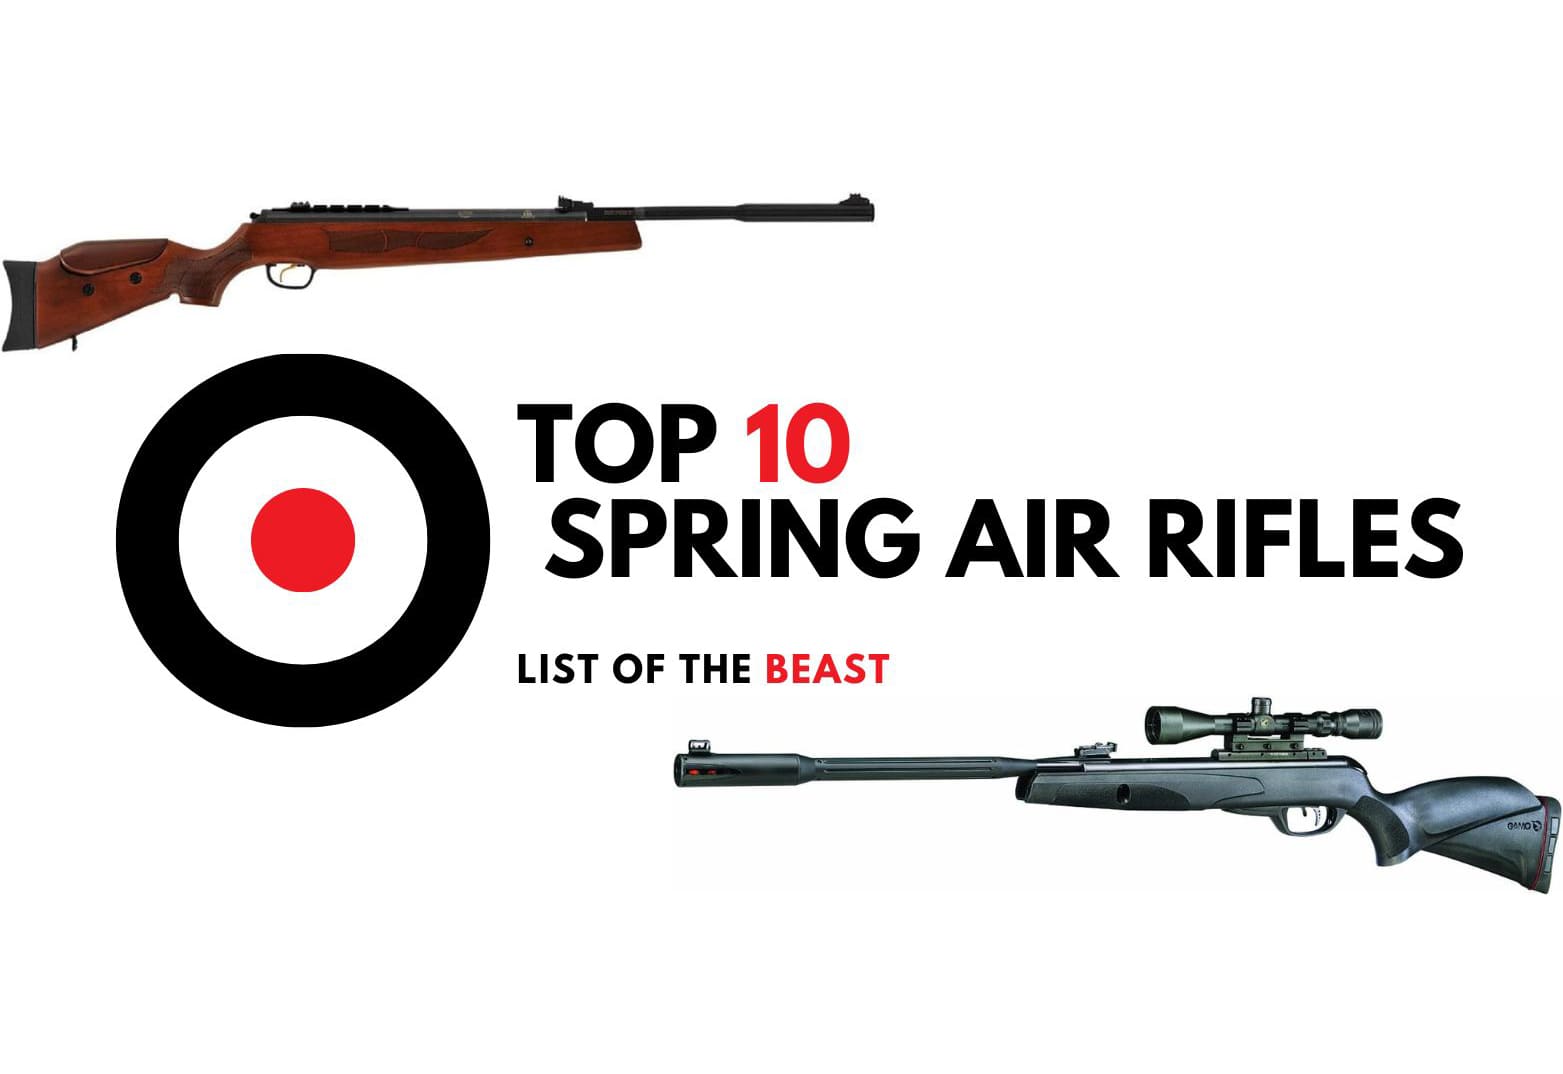 Top 10 Spring Air Rifles